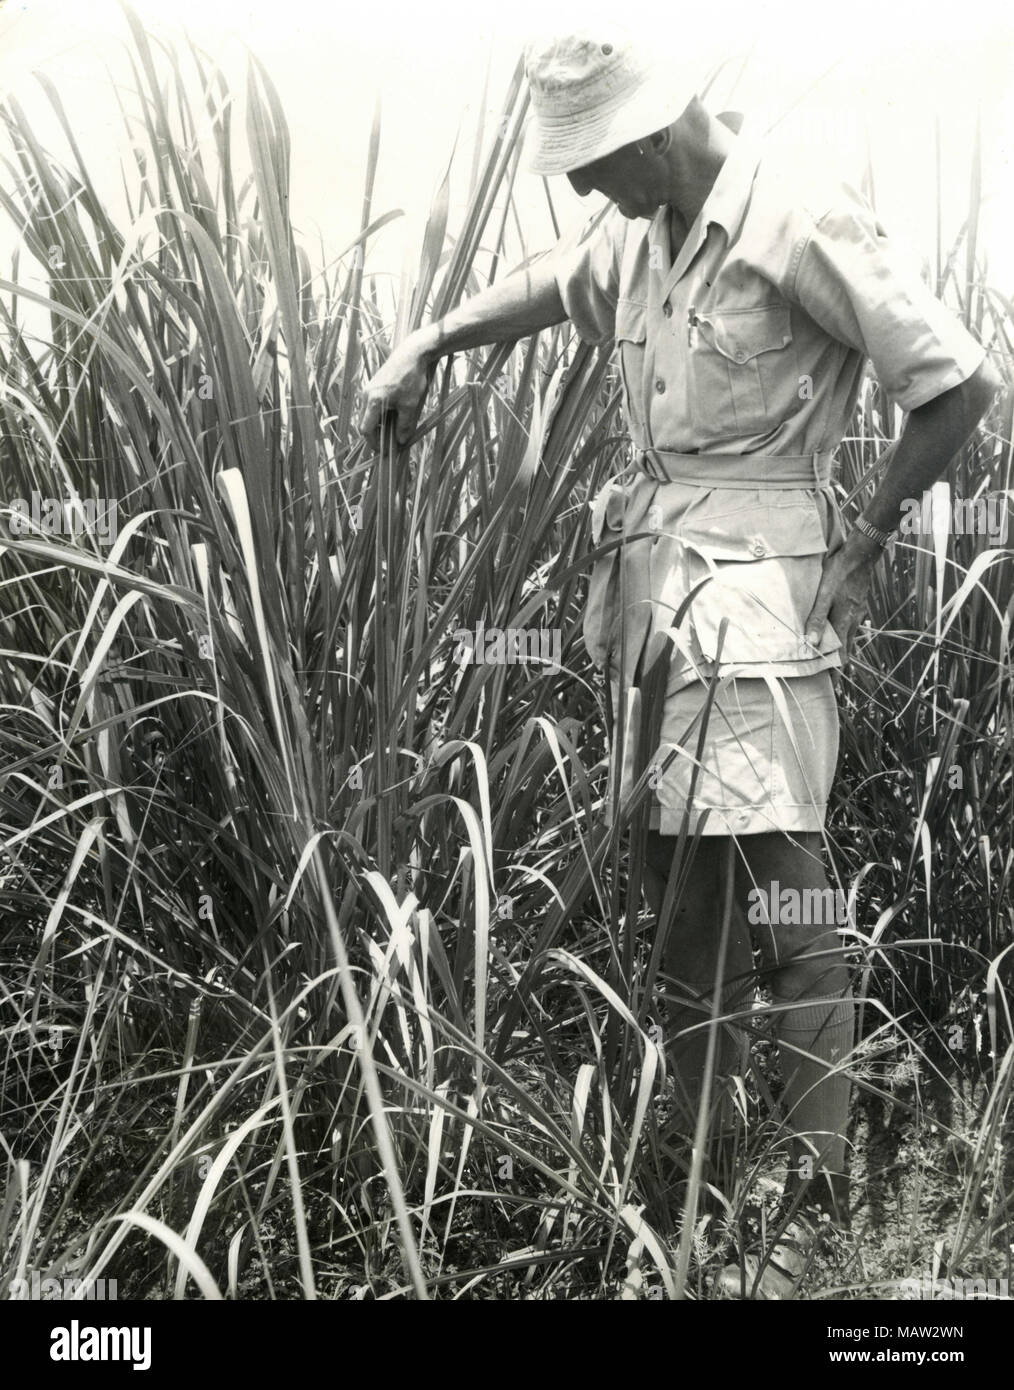 El hombre observando el cultivo, selección de Rhodesia Trust, Zambia, Rhodesia del Sur 1957 Foto de stock